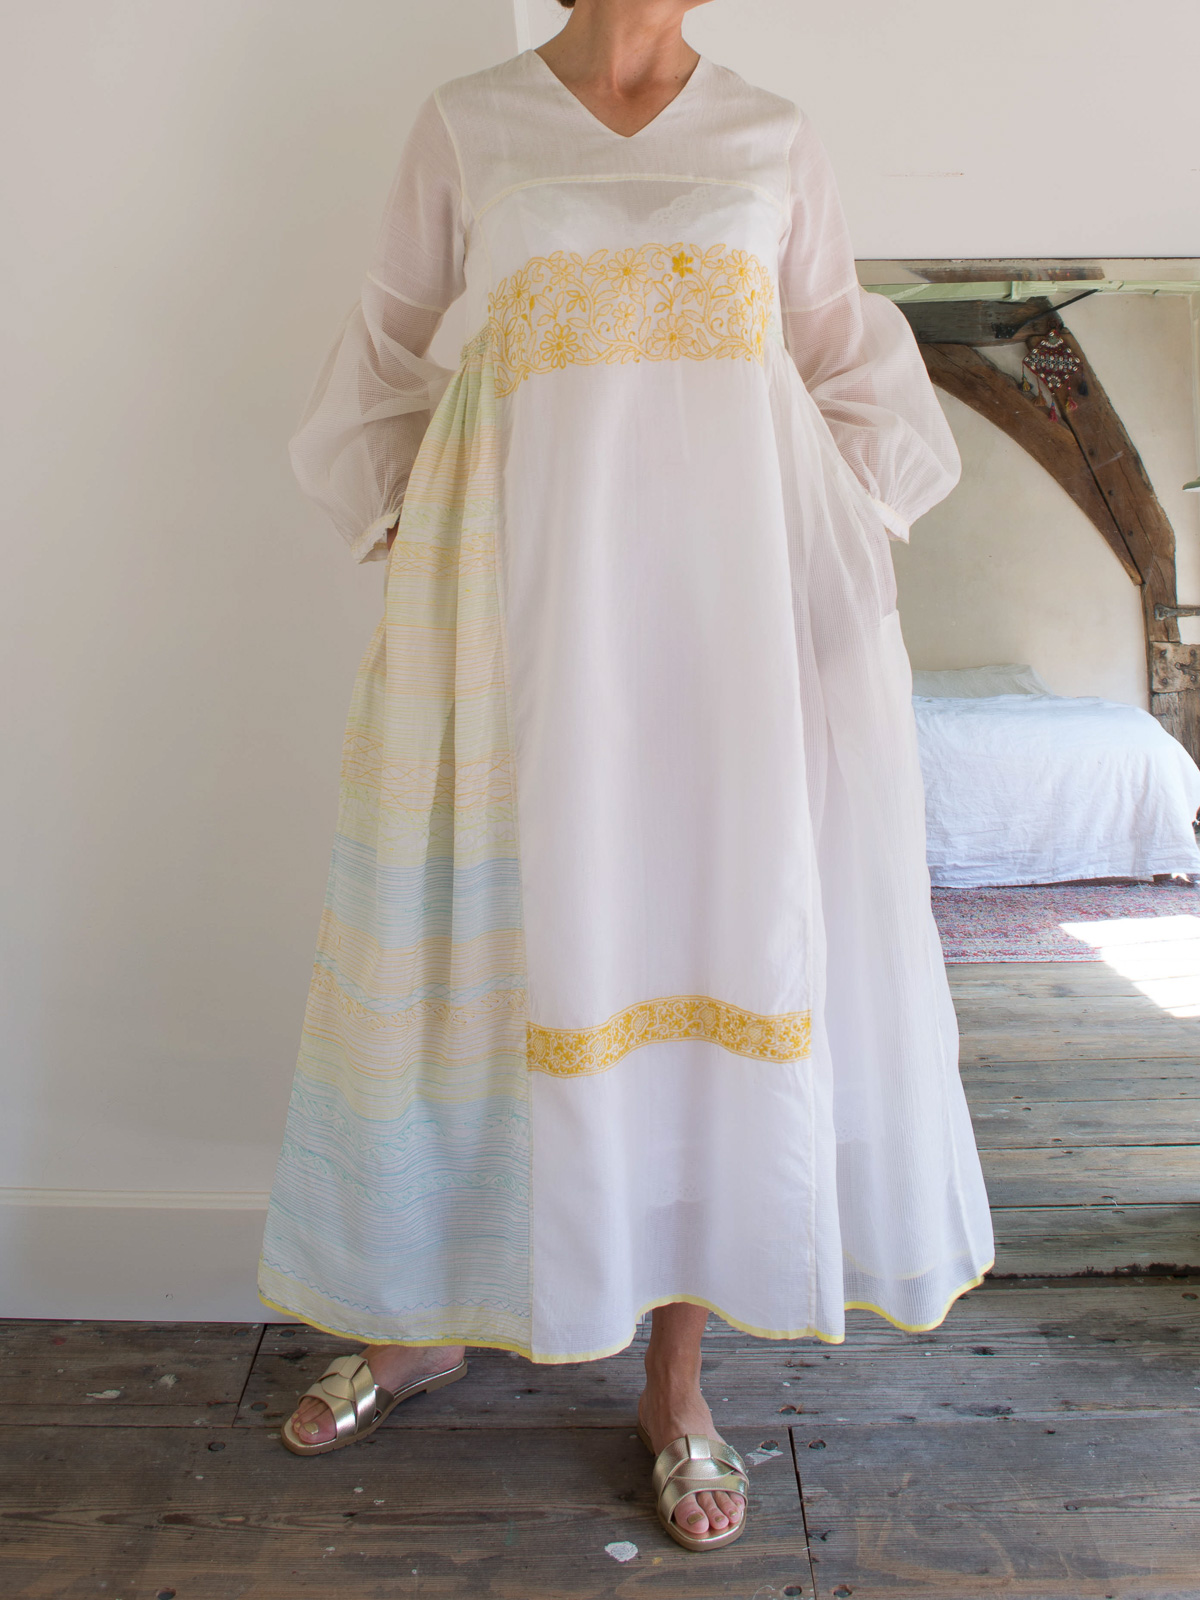 In hoeveelheid lijden hoog witte jurk met geel borduurwerk - jurken en blouses - volledig handgemaakt  - kleding - Ottomania.nl | de officiële Ottomania website